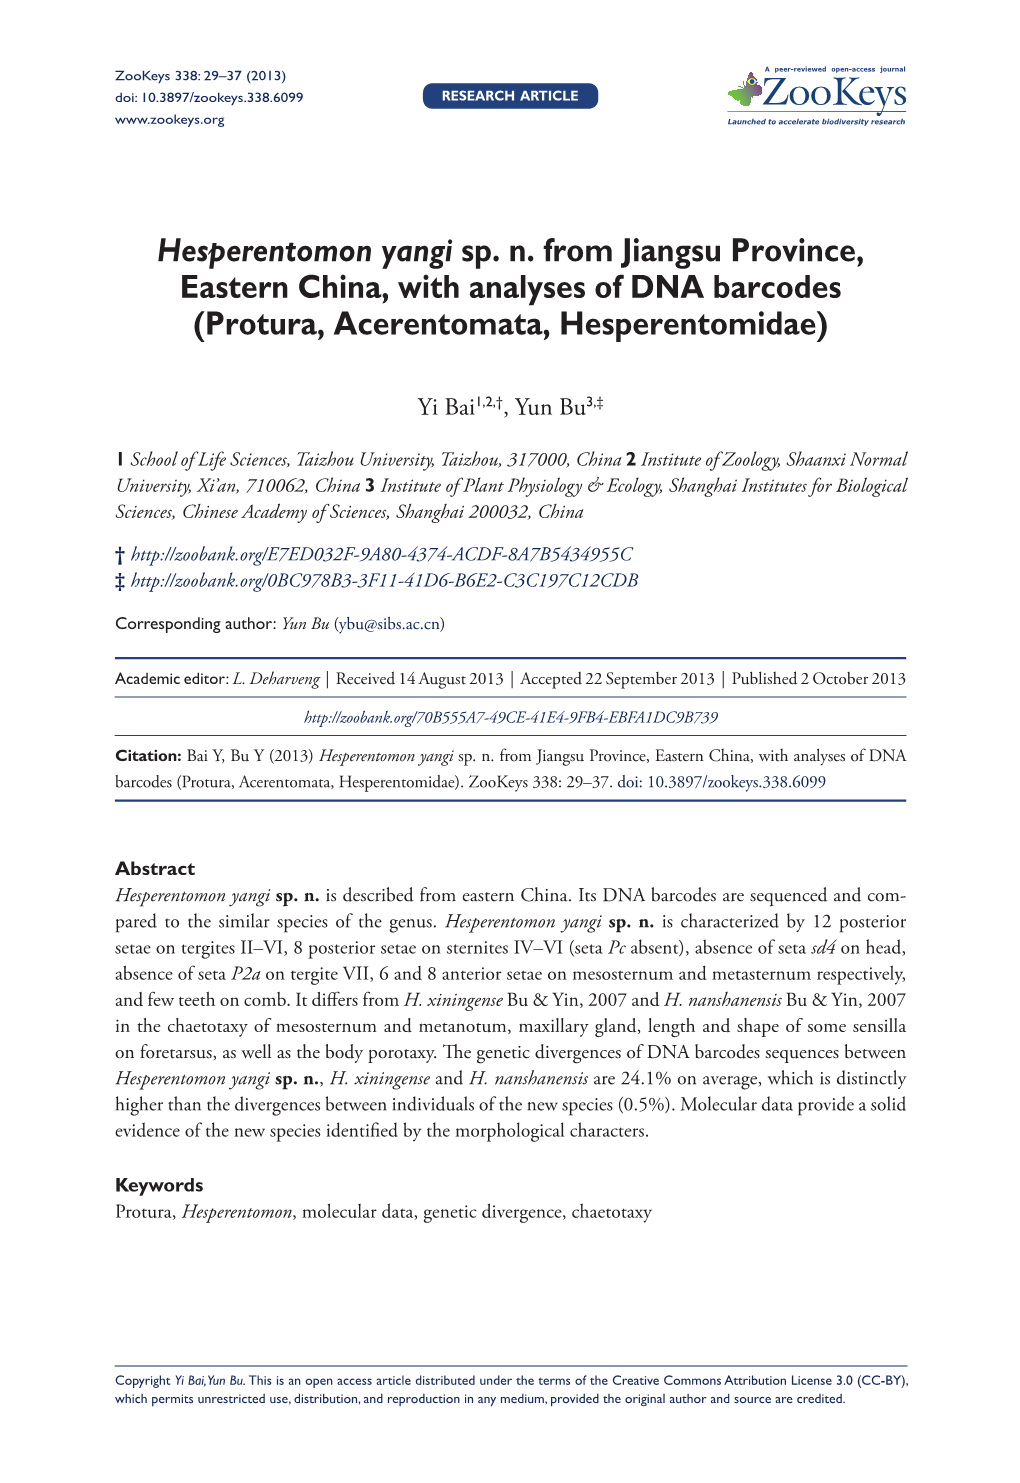 Hesperentomon Yangi Sp. N. from Jiangsu Province, Eastern China, with Analyses of DNA Barcodes (Protura, Acerentomata, Hesperentomidae)